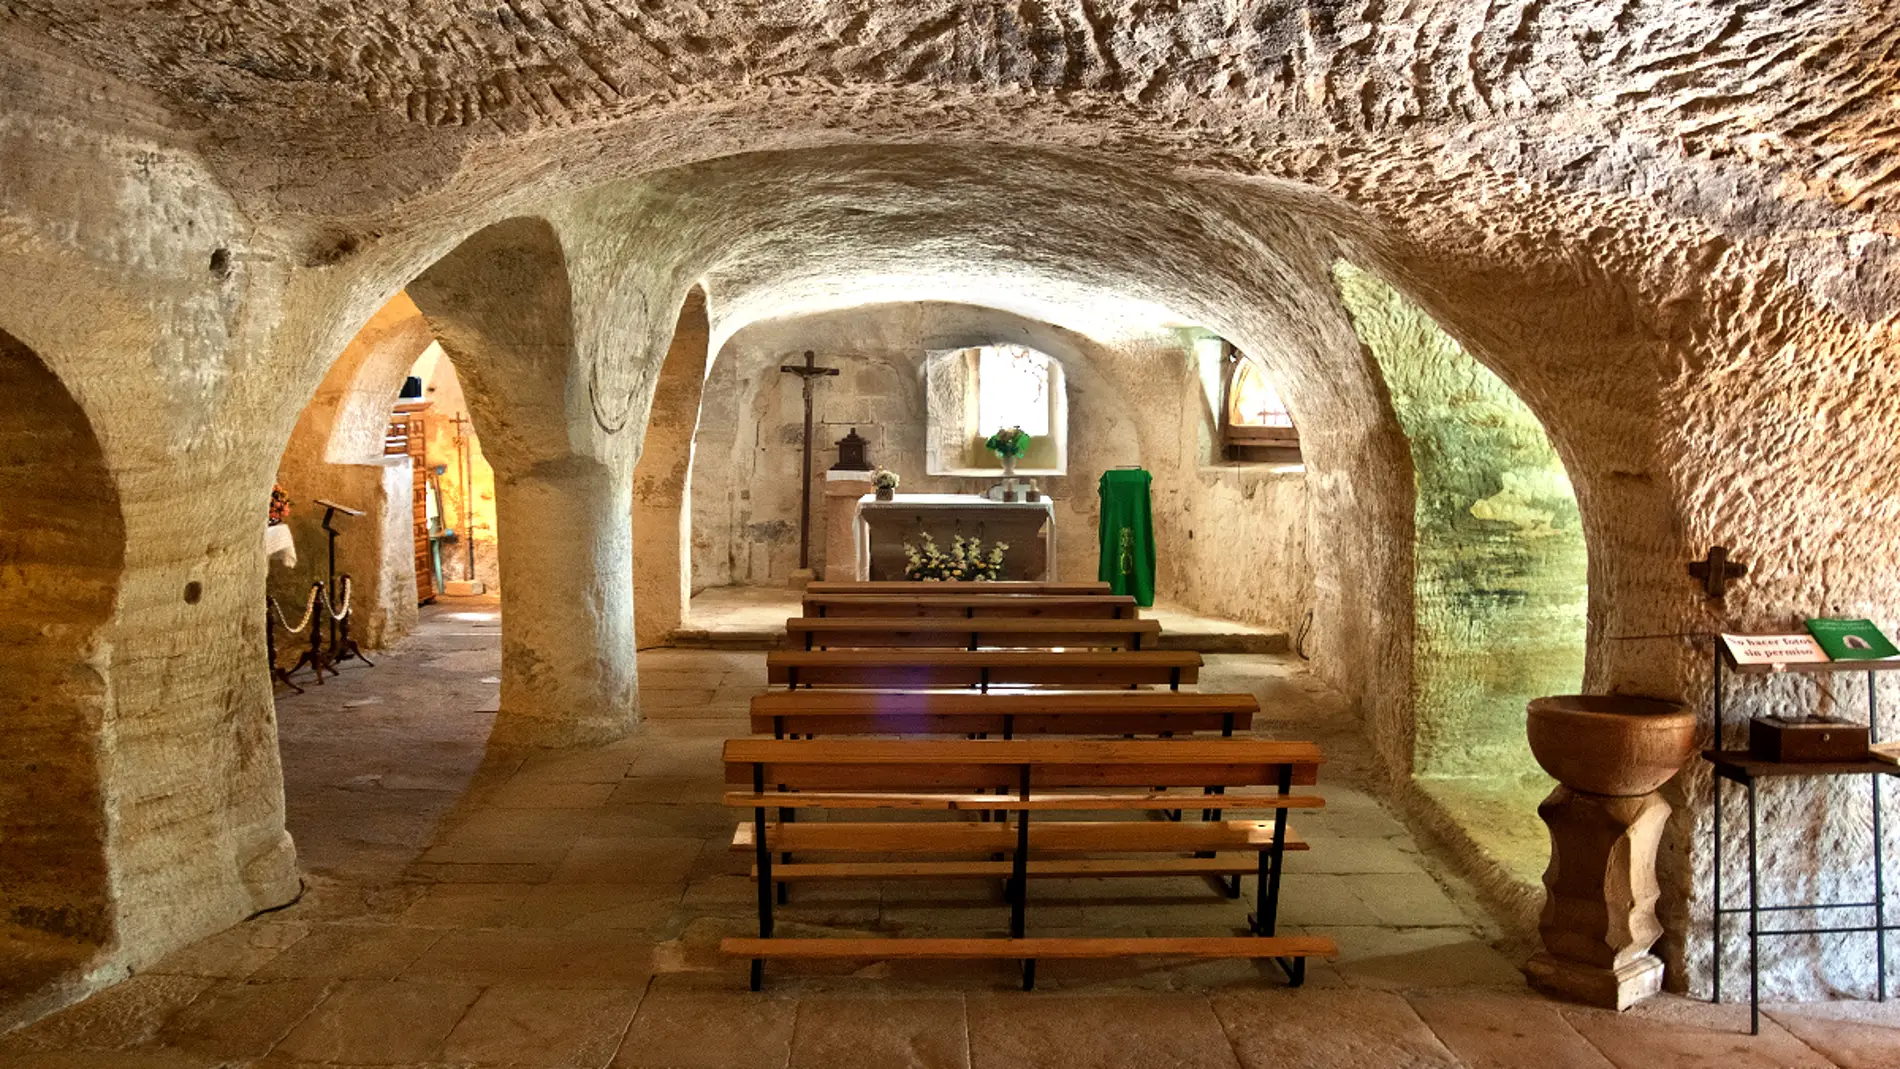 Iglesia rupestre de Santa María de Valverde: historia de una de las edificaciones religiosas más curiosas de nuestro país